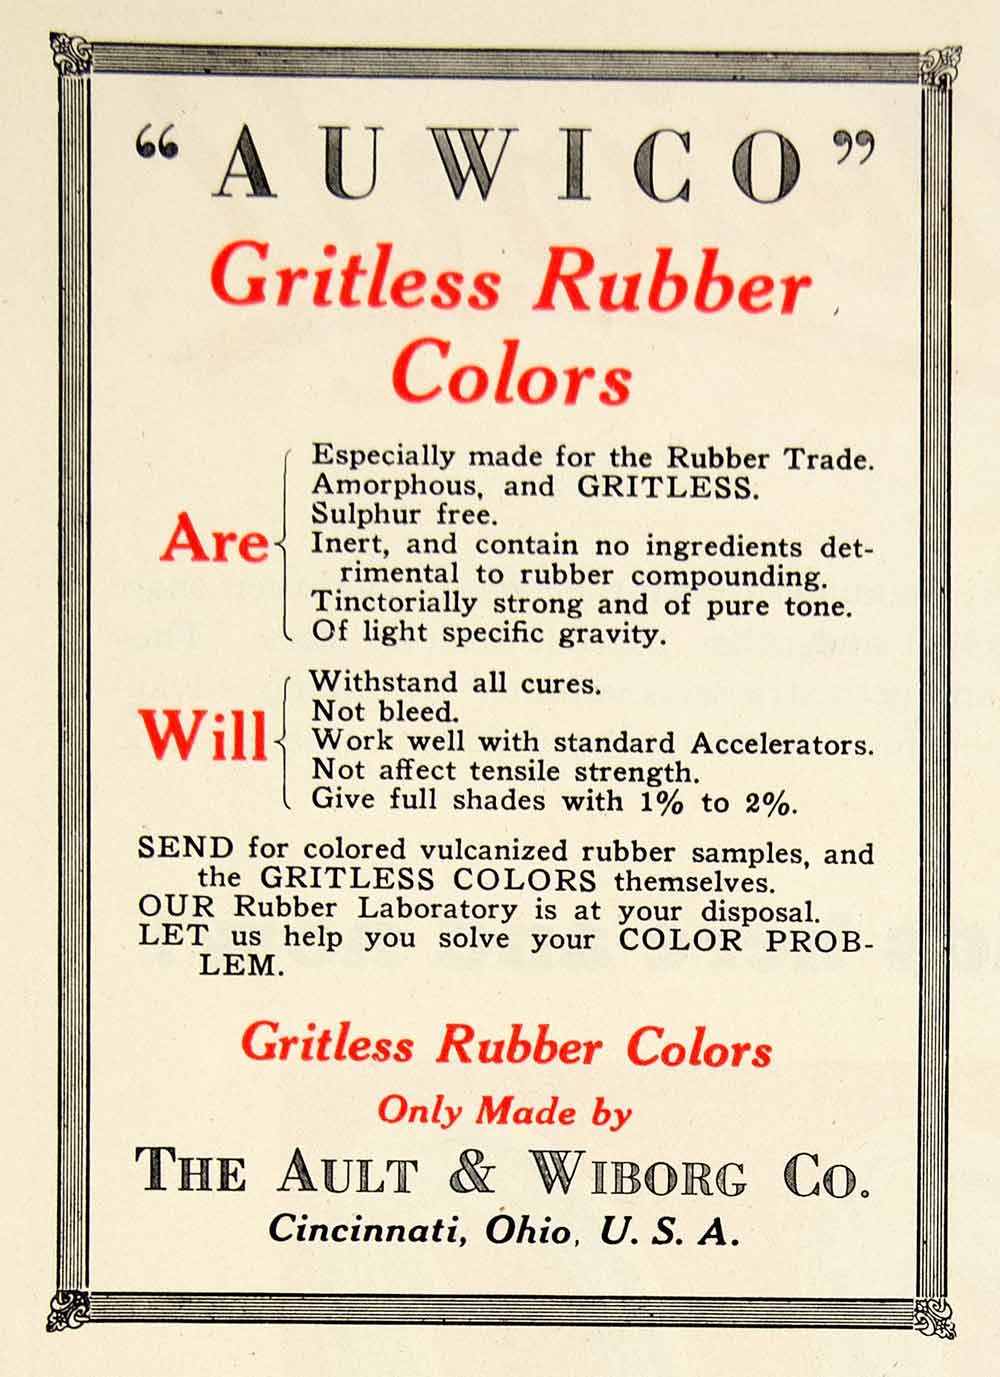 1925 Advert Auwico Gritless Rubber Colors Ault Wiborg Cincinnati Ohio IRR1